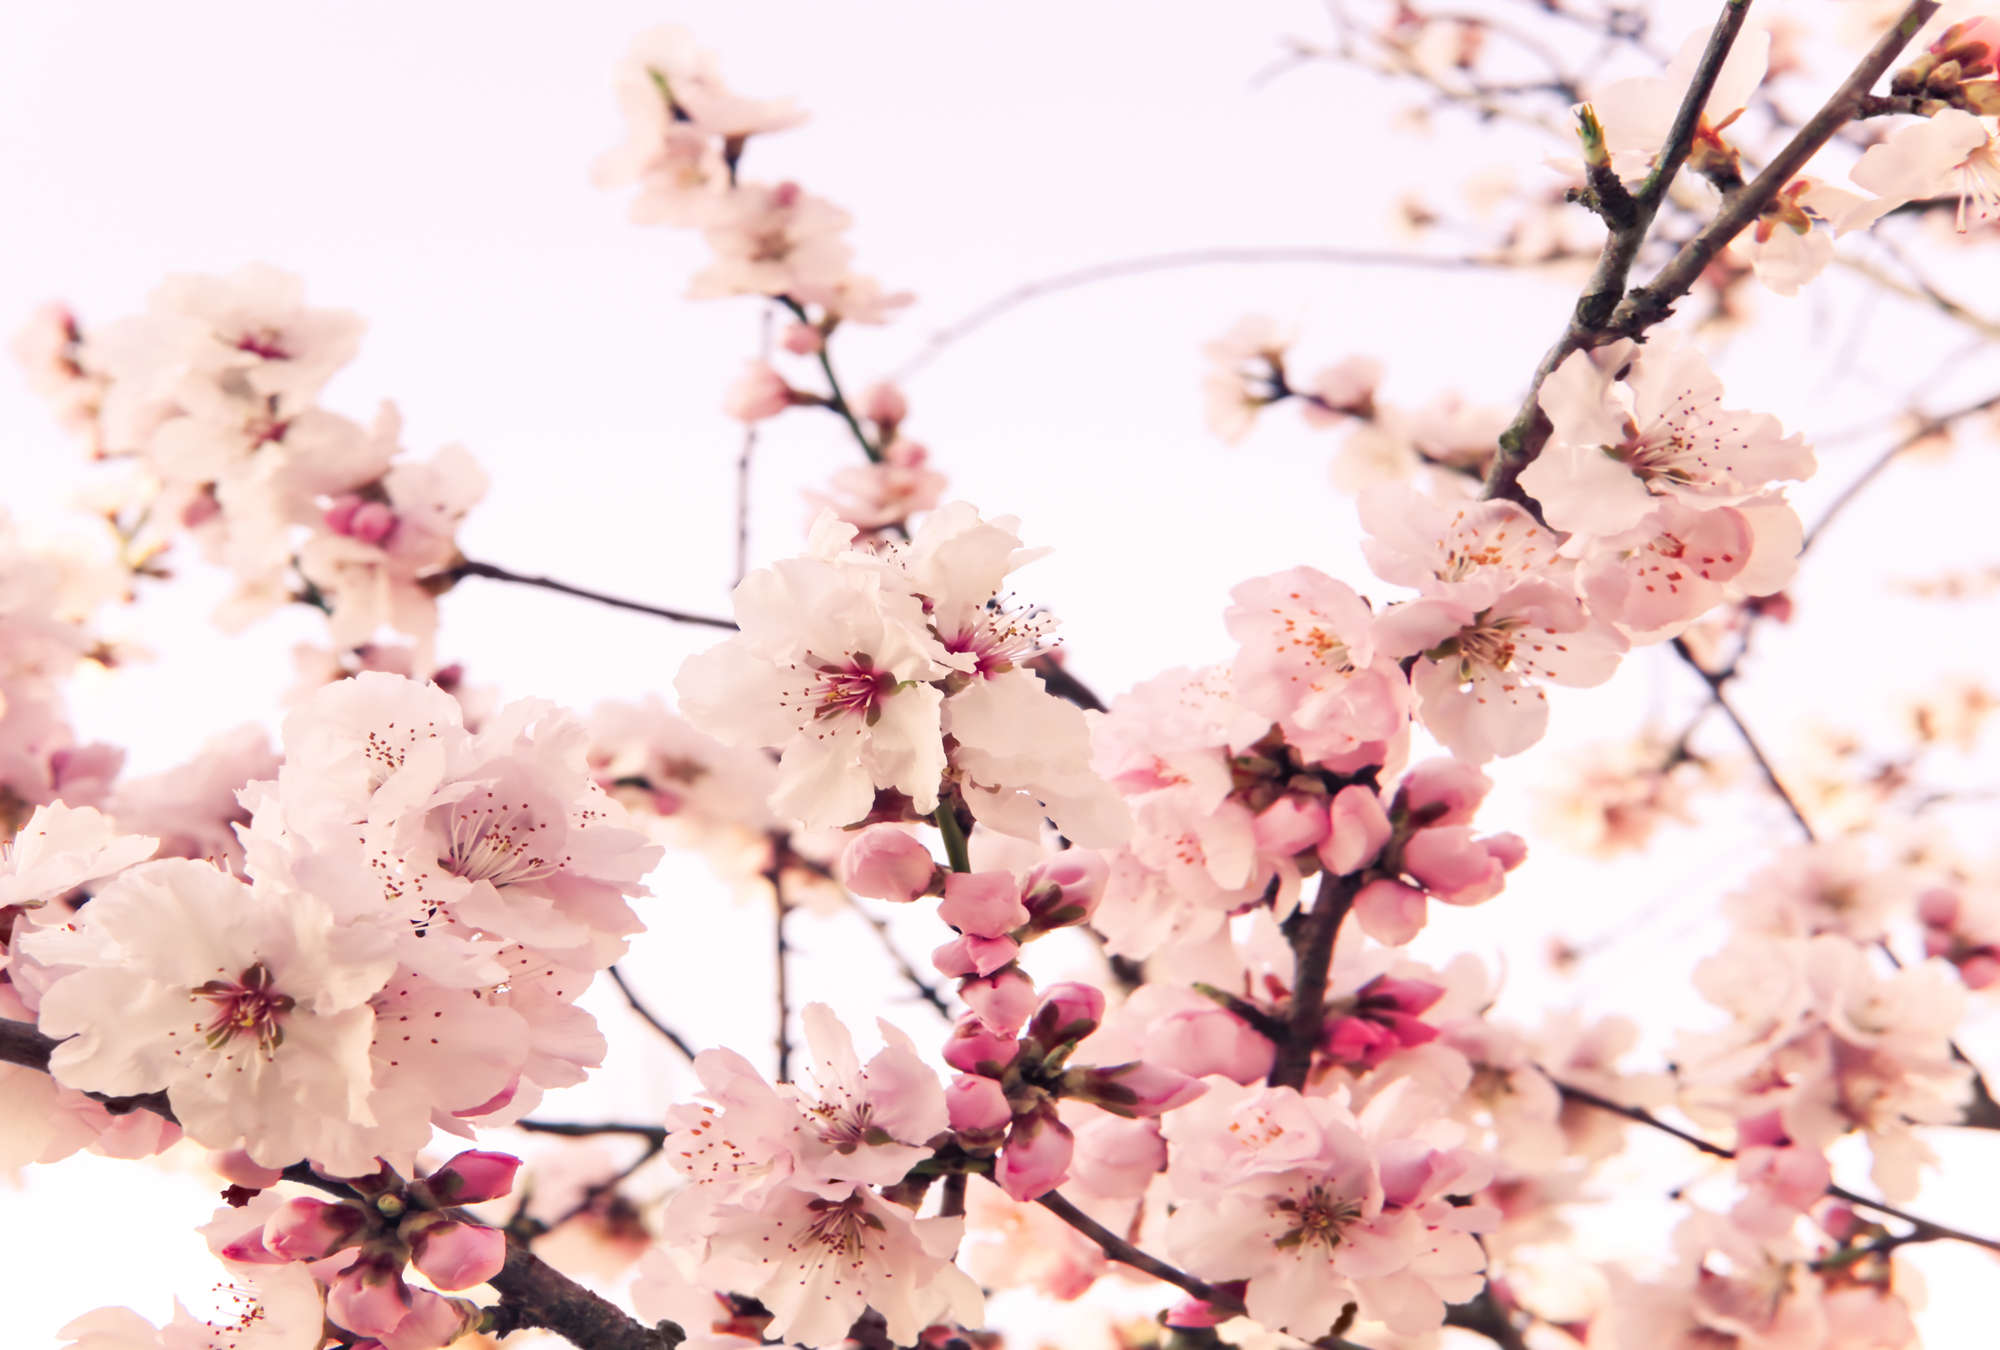             Carta da parati fotografica di piante con fiori di ciliegio in fiore su vello testurizzato
        